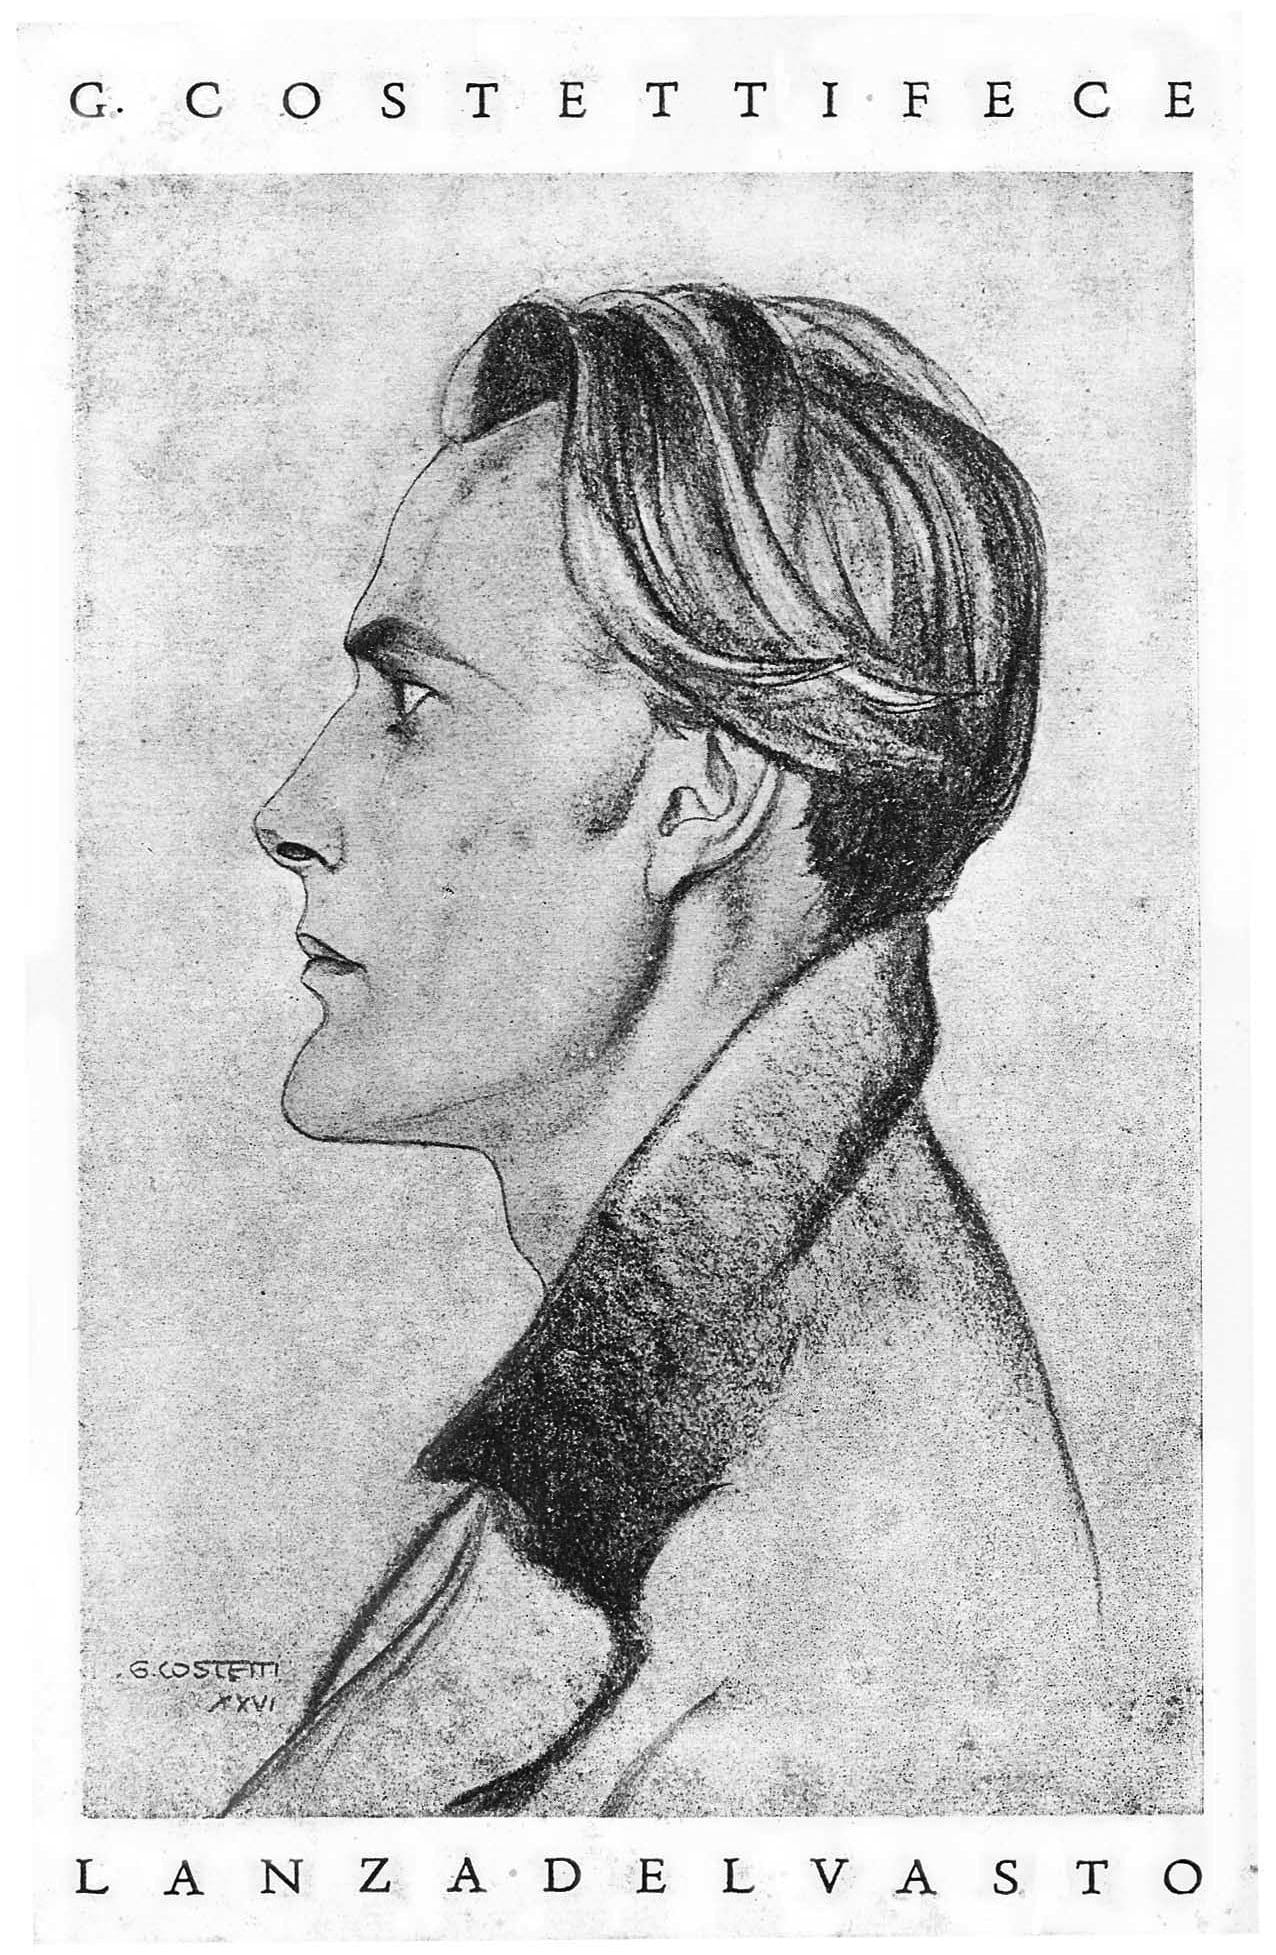 Lanza del Vasto : Dibujo de Giovanni Costetti (Florencia, 1926).